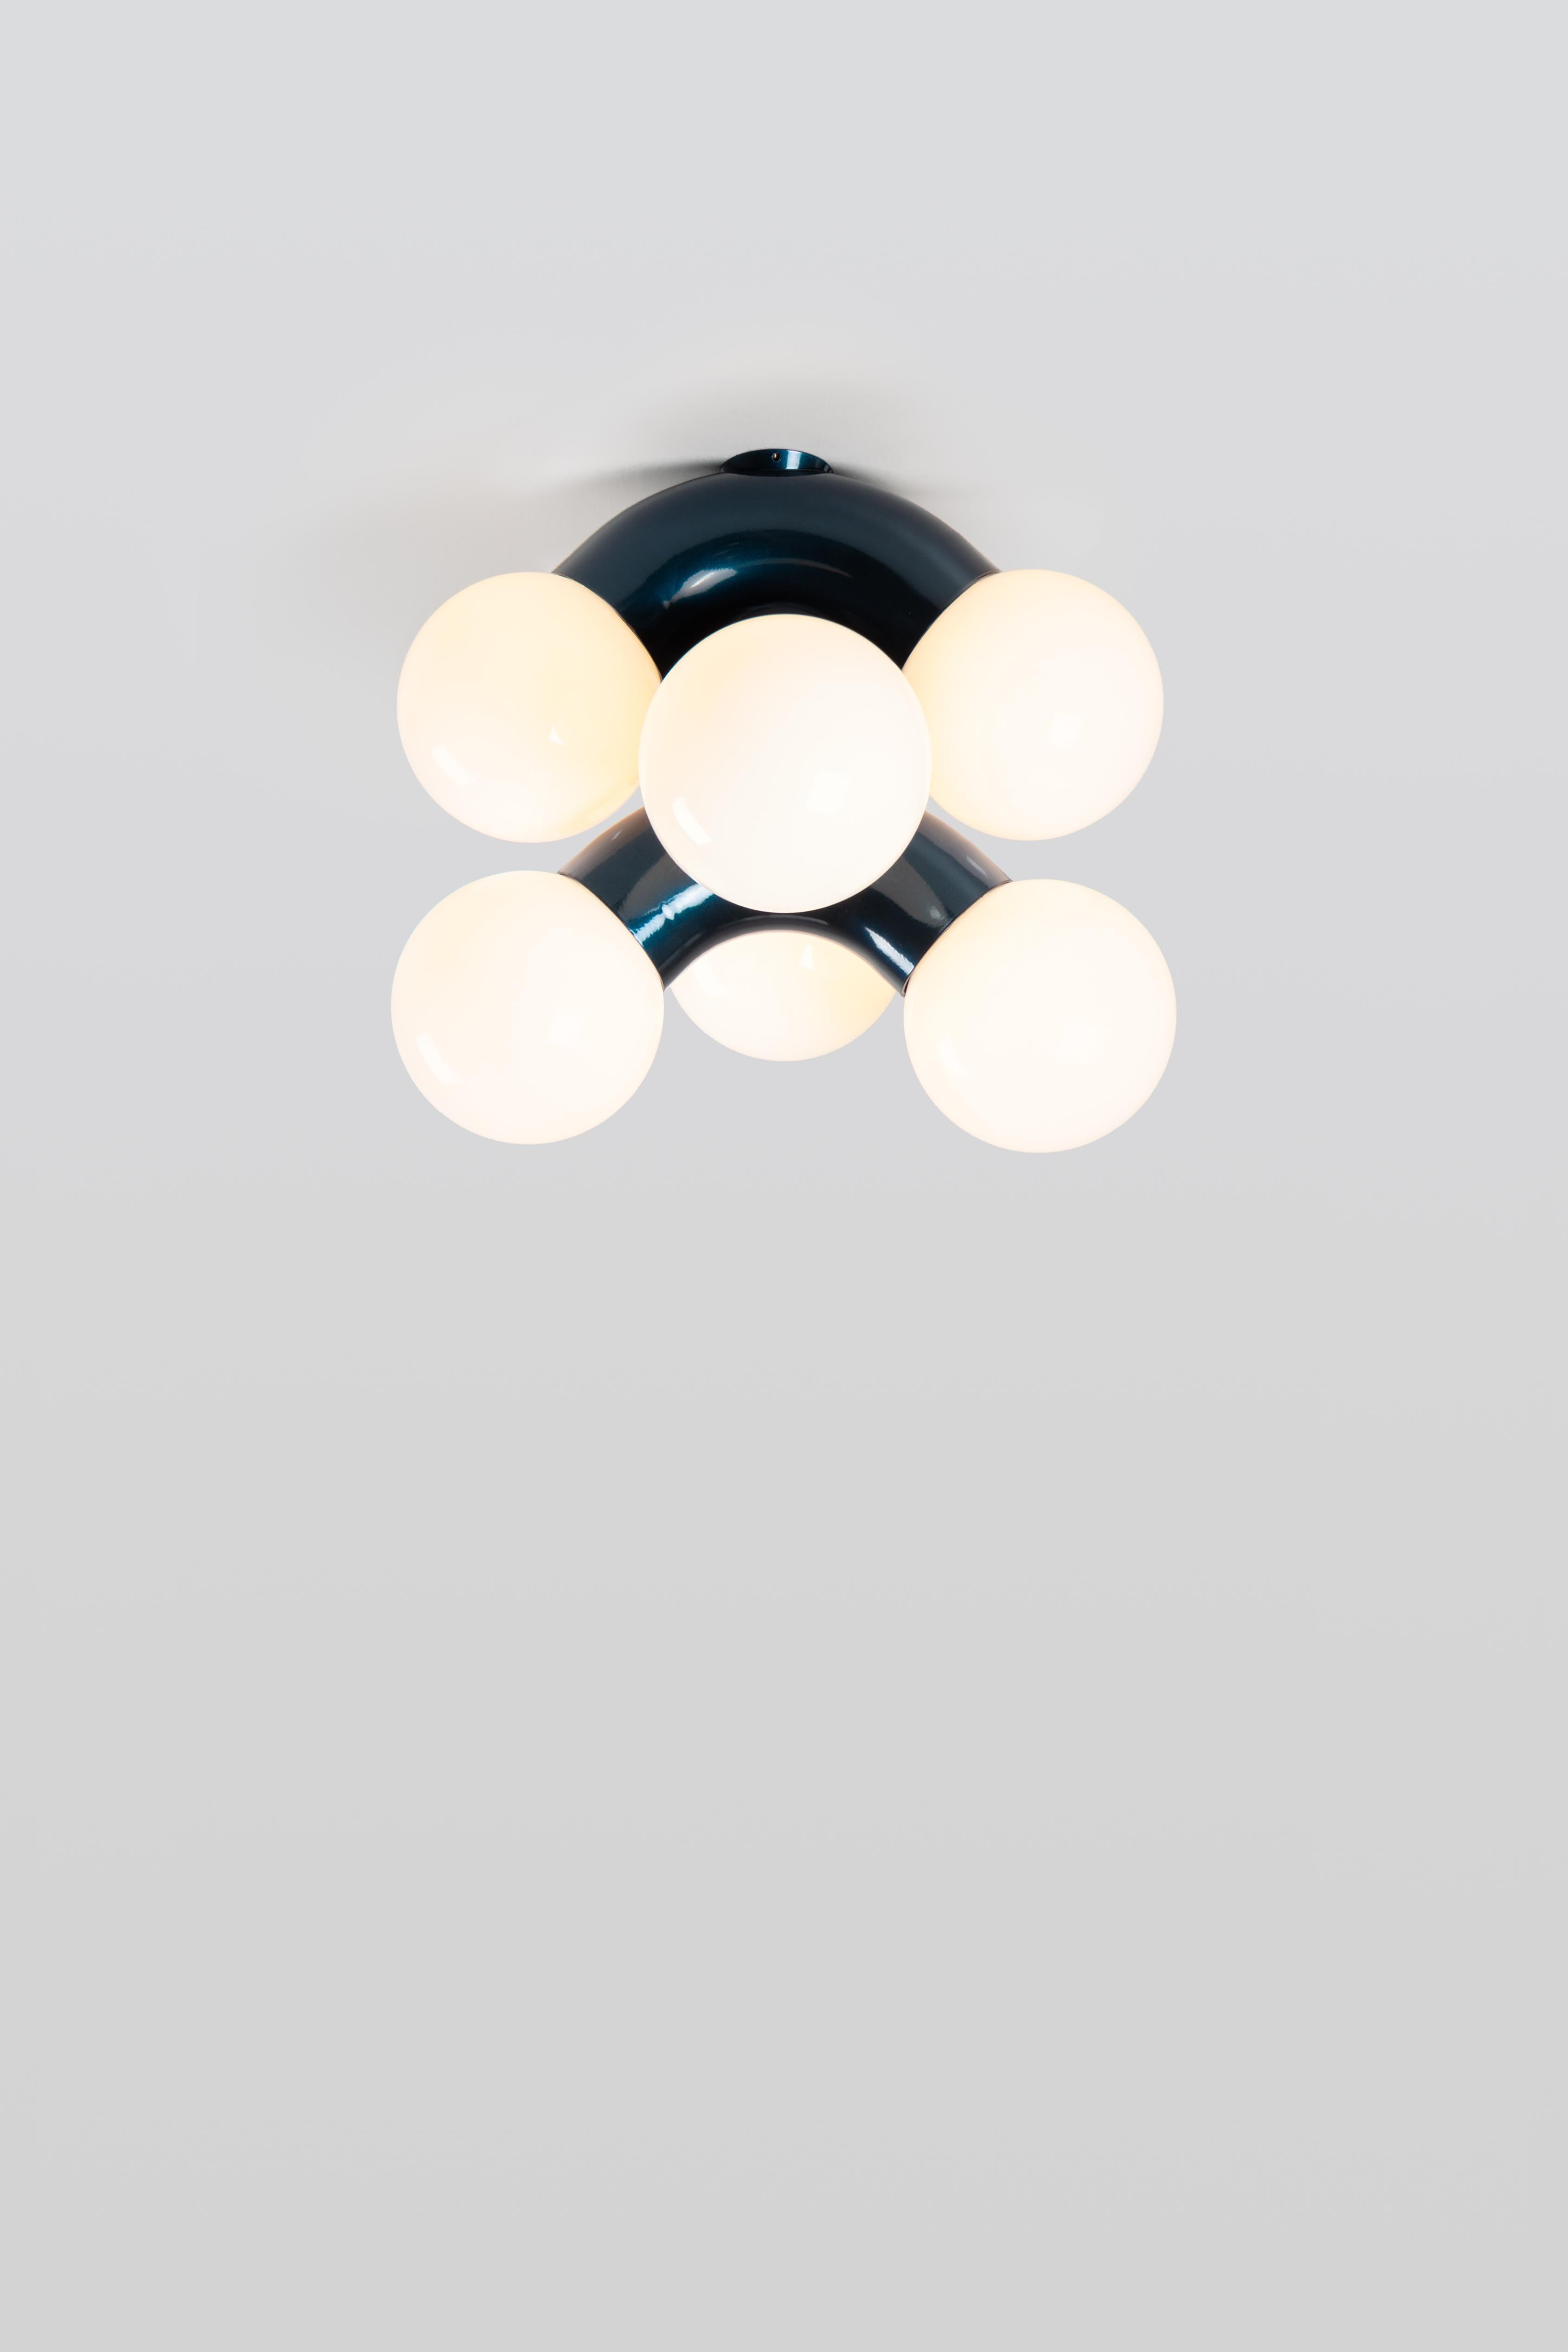 VINE 3-C, lampe de plafond
Conception : Caine Heintzman, éditeur : ANDLight

Le plafonnier Vigne combine une forme exagérée avec la propension à la répétition, ce qui donne un luminaire ambitieux à échelle verticale.

Matériaux
- Acier